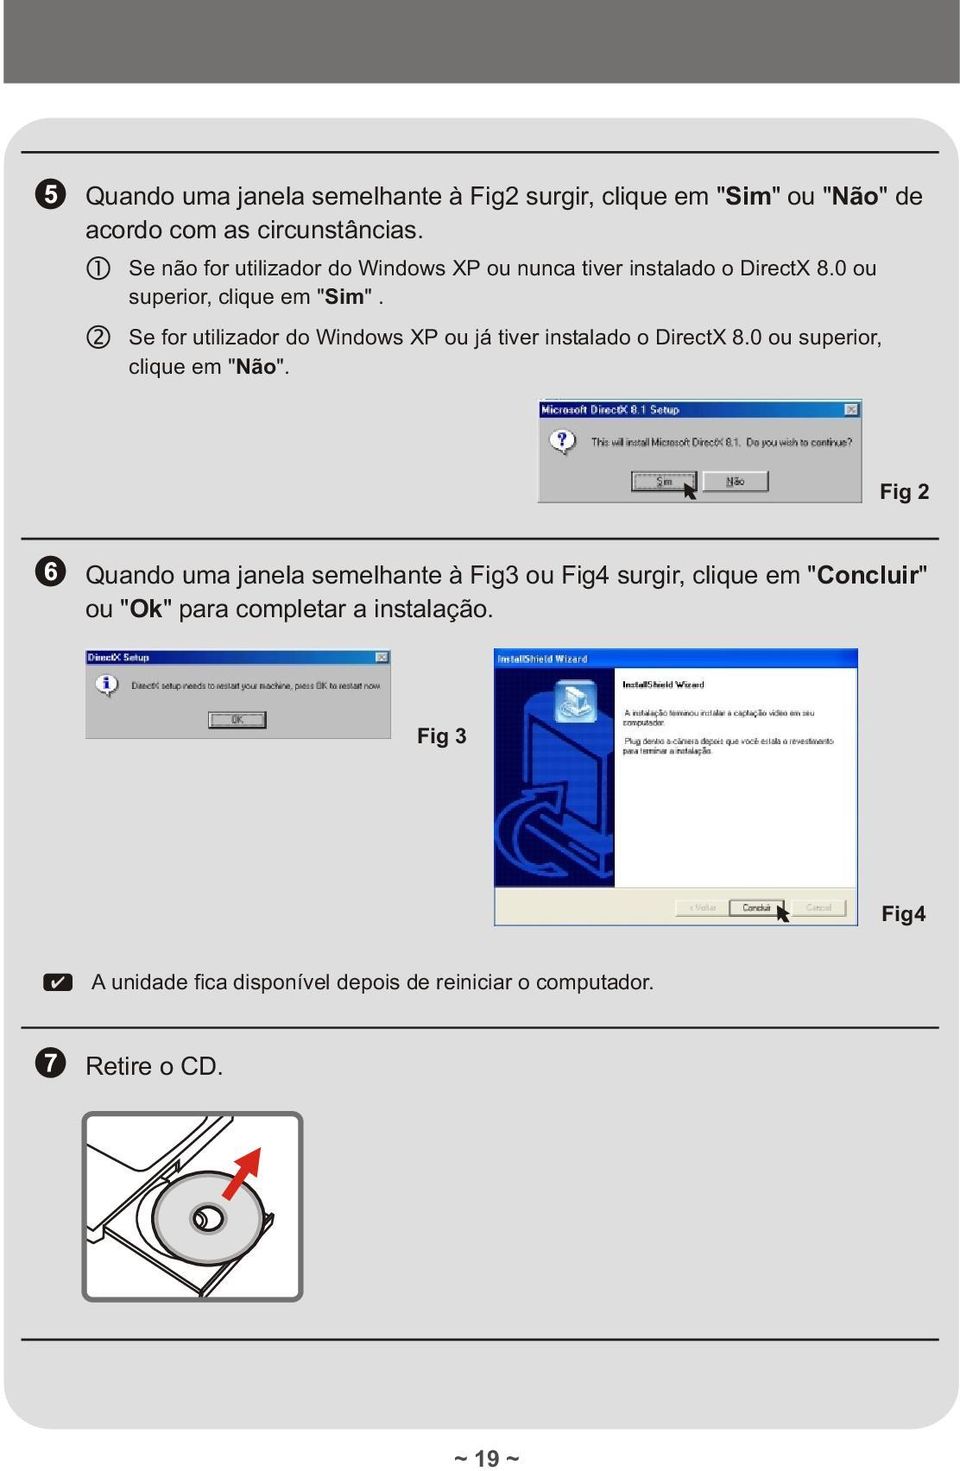 Se for utilizador do Windows XP ou já tiver instalado o DirectX 8.0 ou superior, clique em "Não".